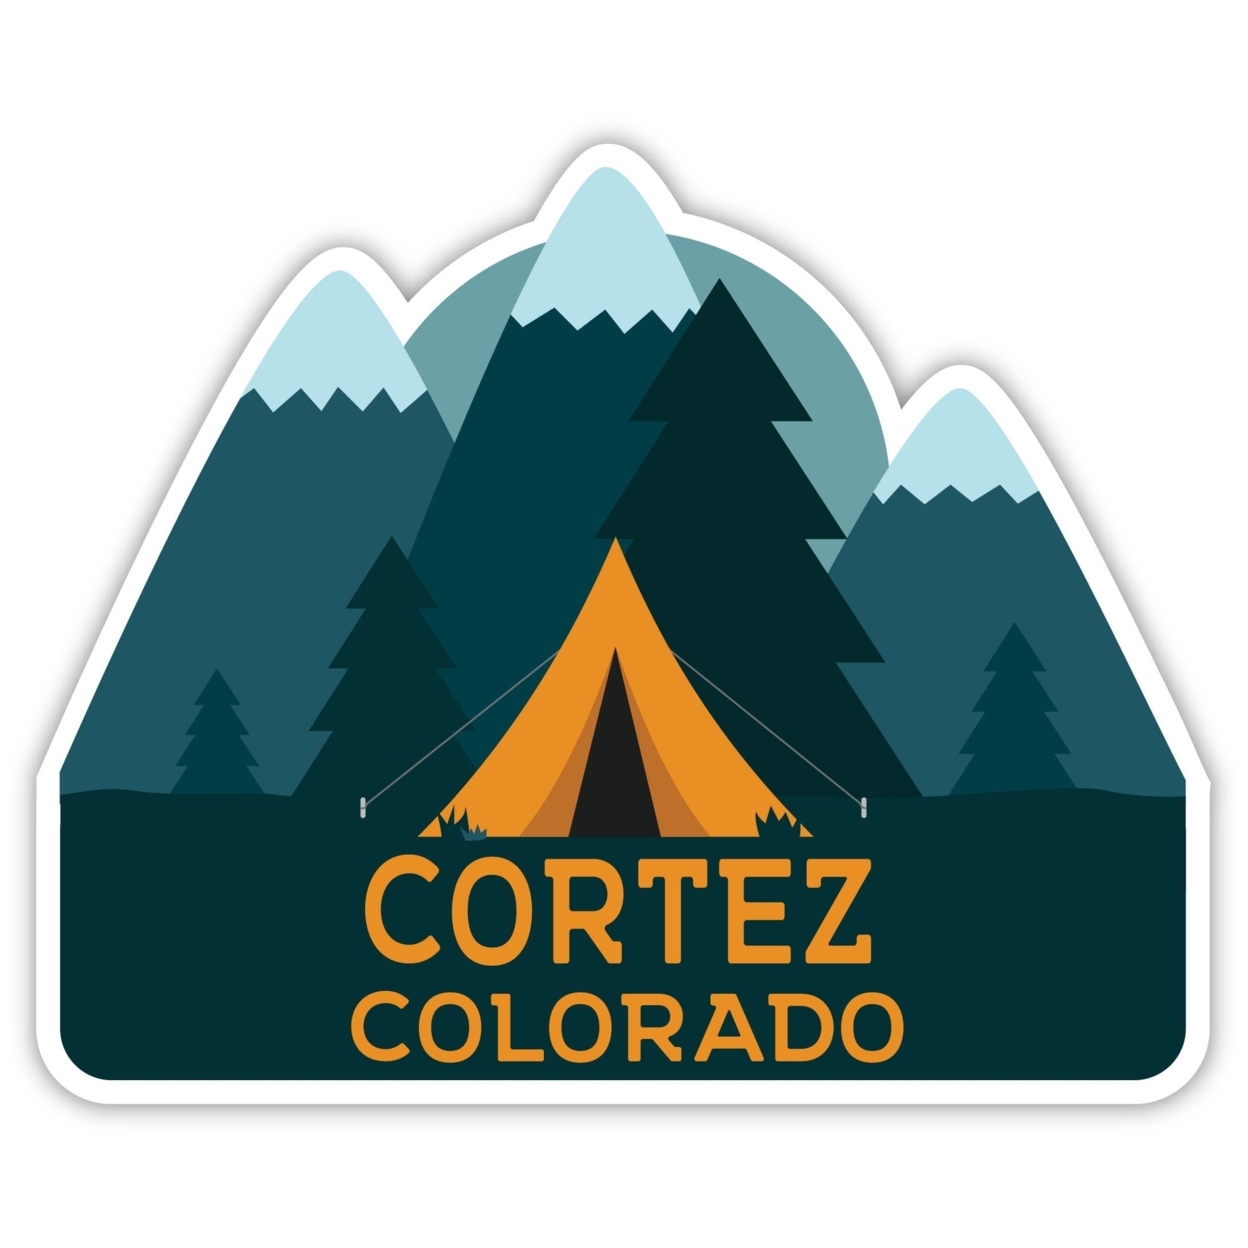 Cortez Colorado Souvenir Decorative Stickers (Choose Theme And Size) - 4-Pack, 6-Inch, Tent